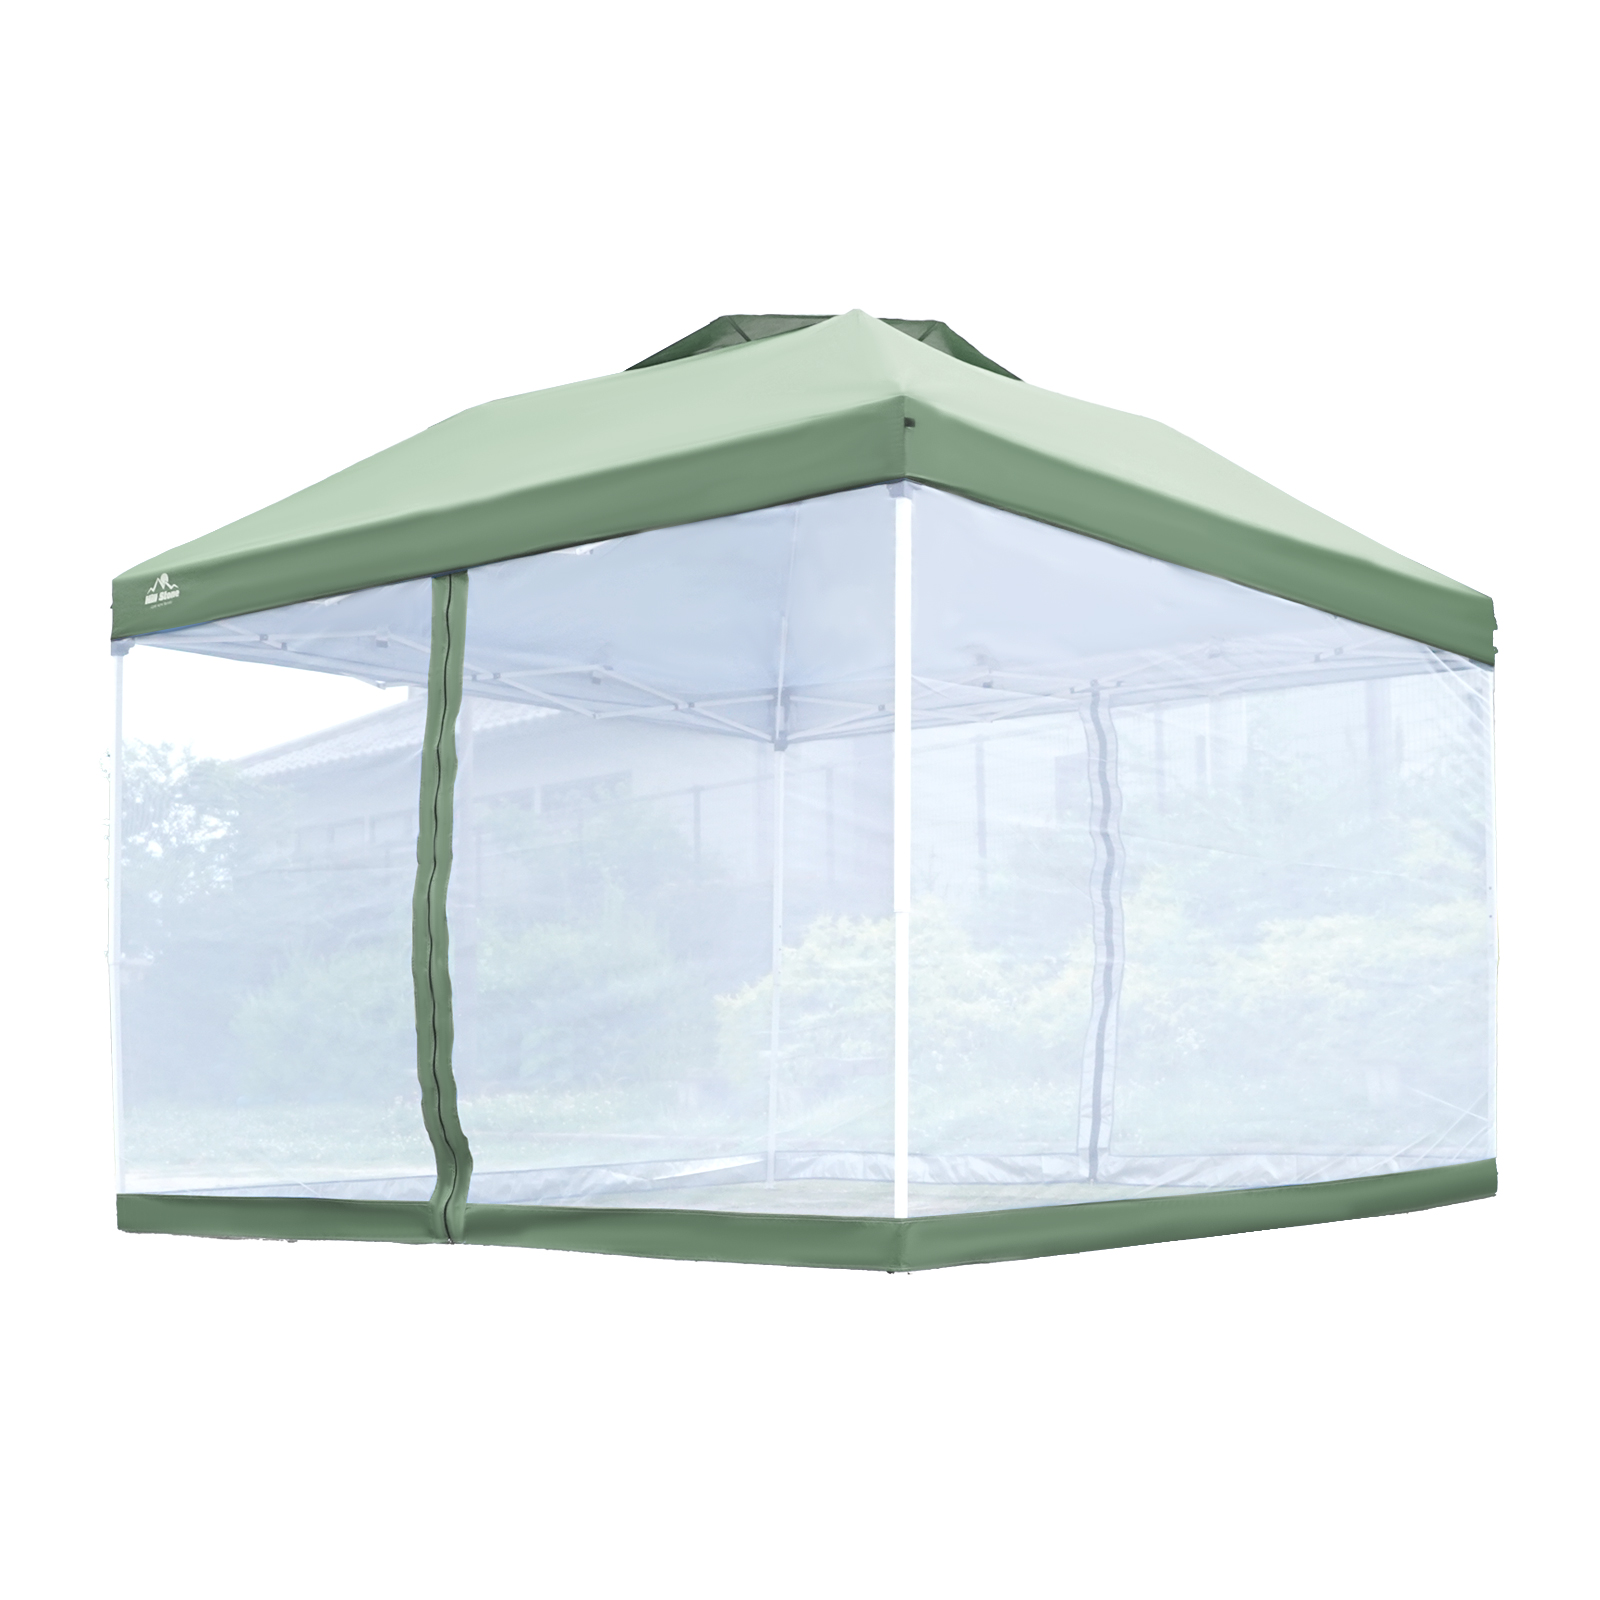 テント メッシュタープテント セット 大型テント メッシュシートセット タープメッシュ セット 3m タープテント用蚊帳 ad059